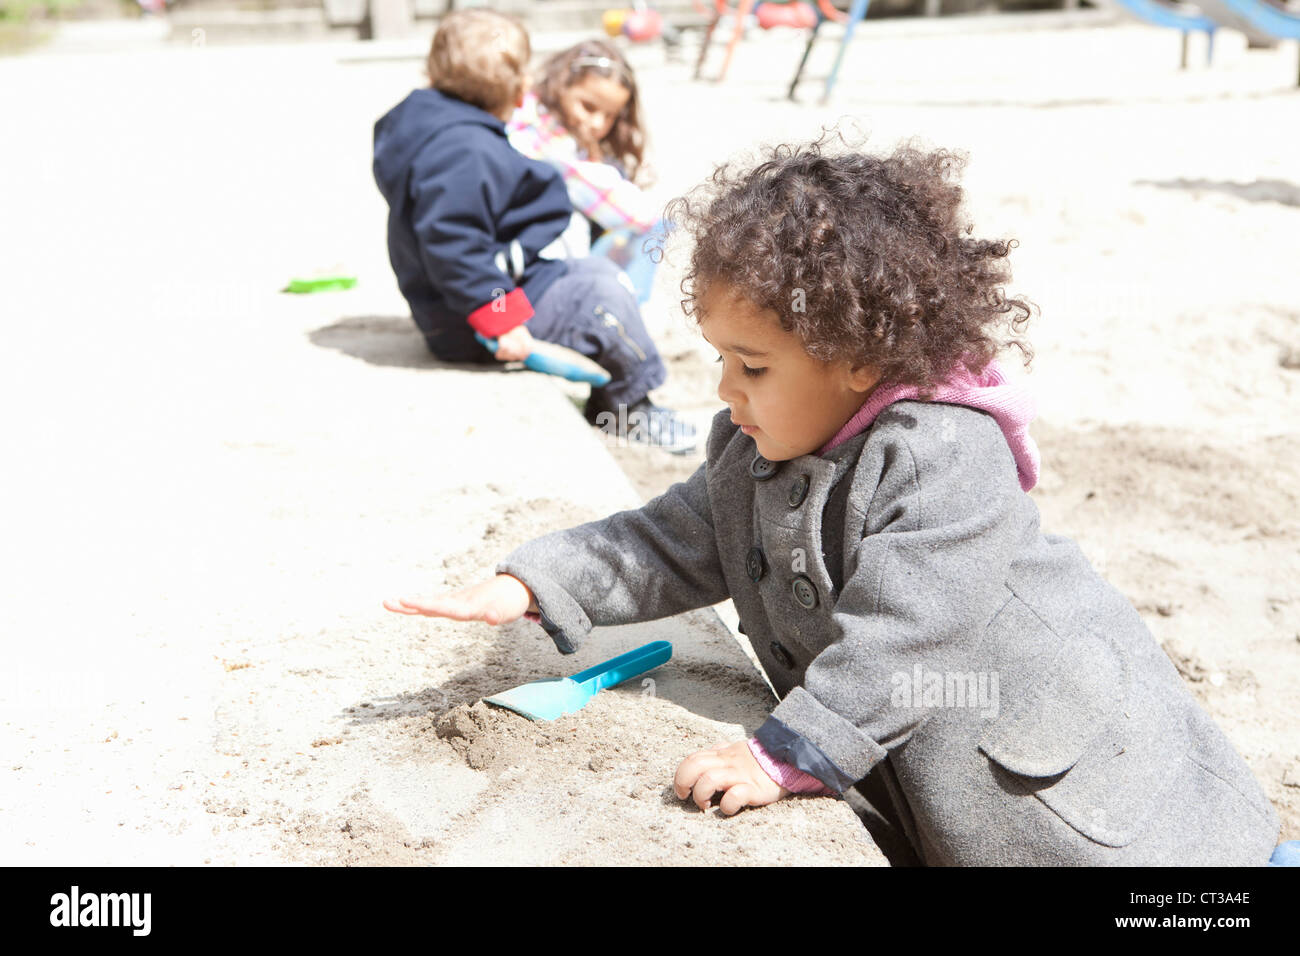 Mädchen spielen mit Sand auf Spielplatz Stockfoto